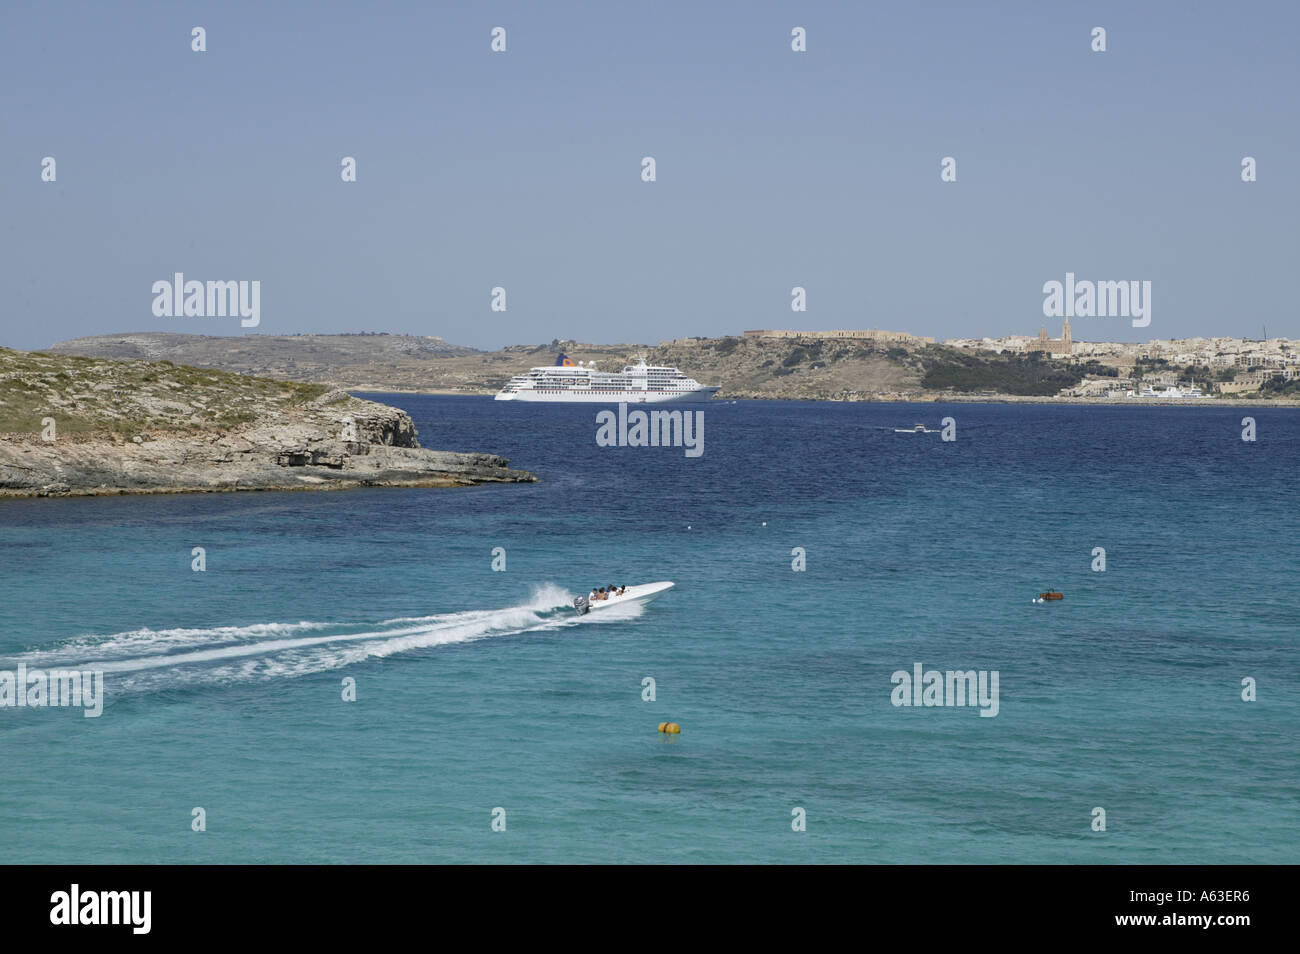 Motorboat in sea, Comino Island, Malta Stock Photo